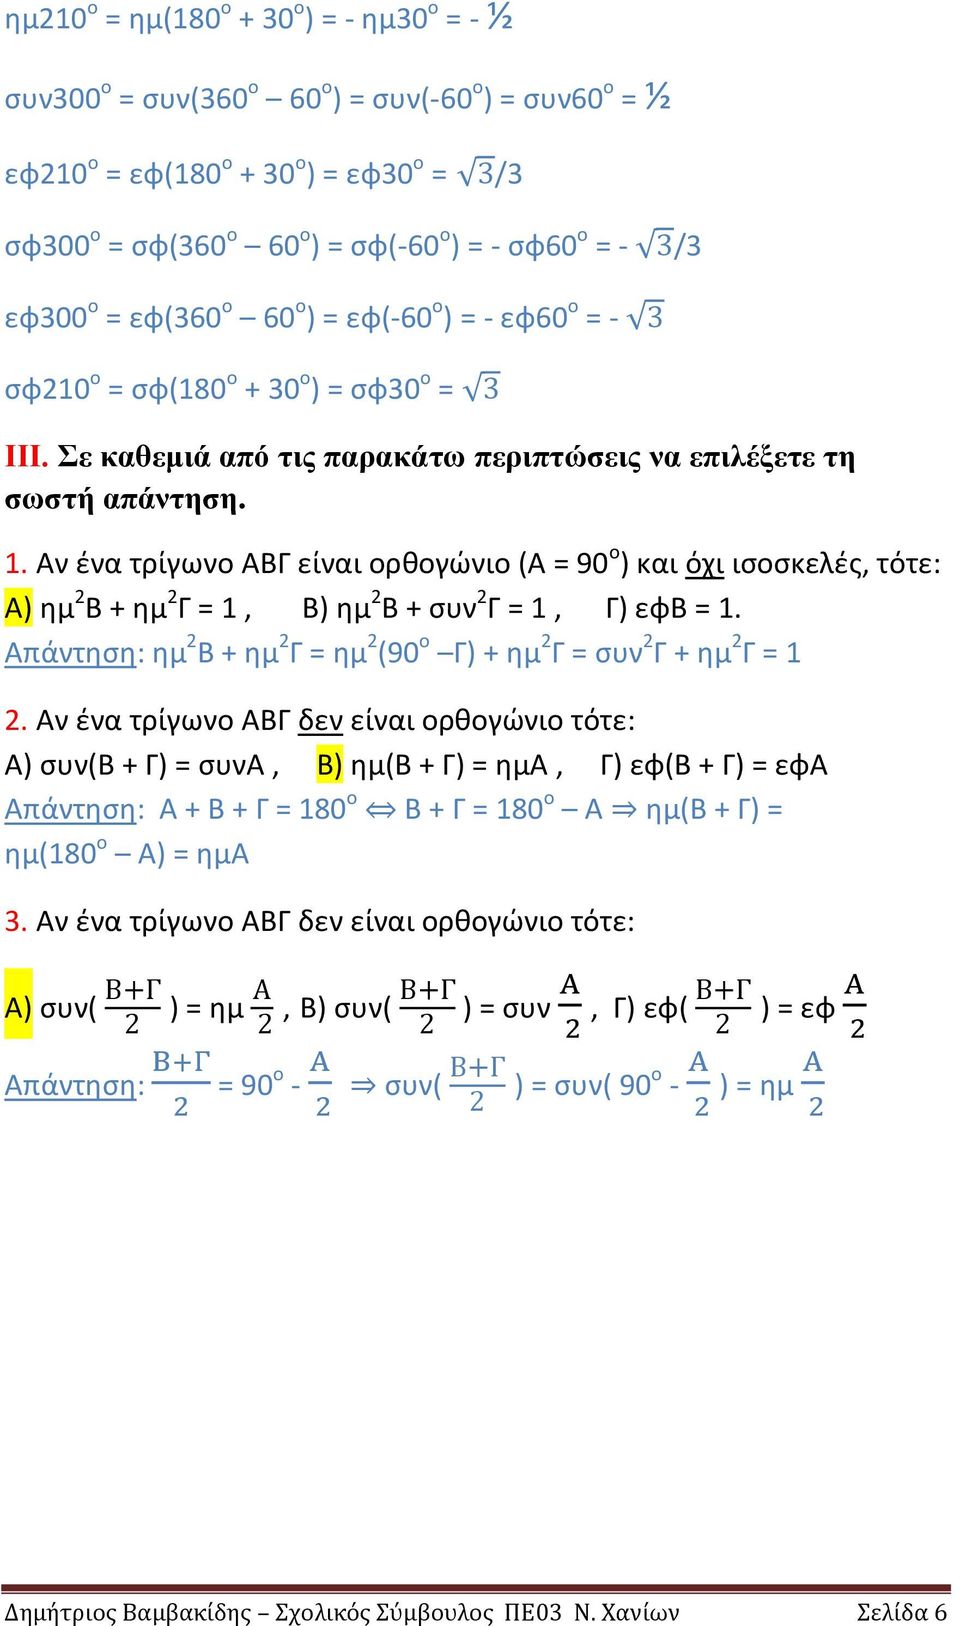 Αν ένα τρίγωνο ΑΒΓ είναι ορθογώνιο (Α = 90 ο ) και όχι ισοσκελές, τότε: Α) ημ 2 Β + ημ 2 Γ = 1, Β) ημ 2 Β + συν 2 Γ = 1, Γ) εφβ = 1.